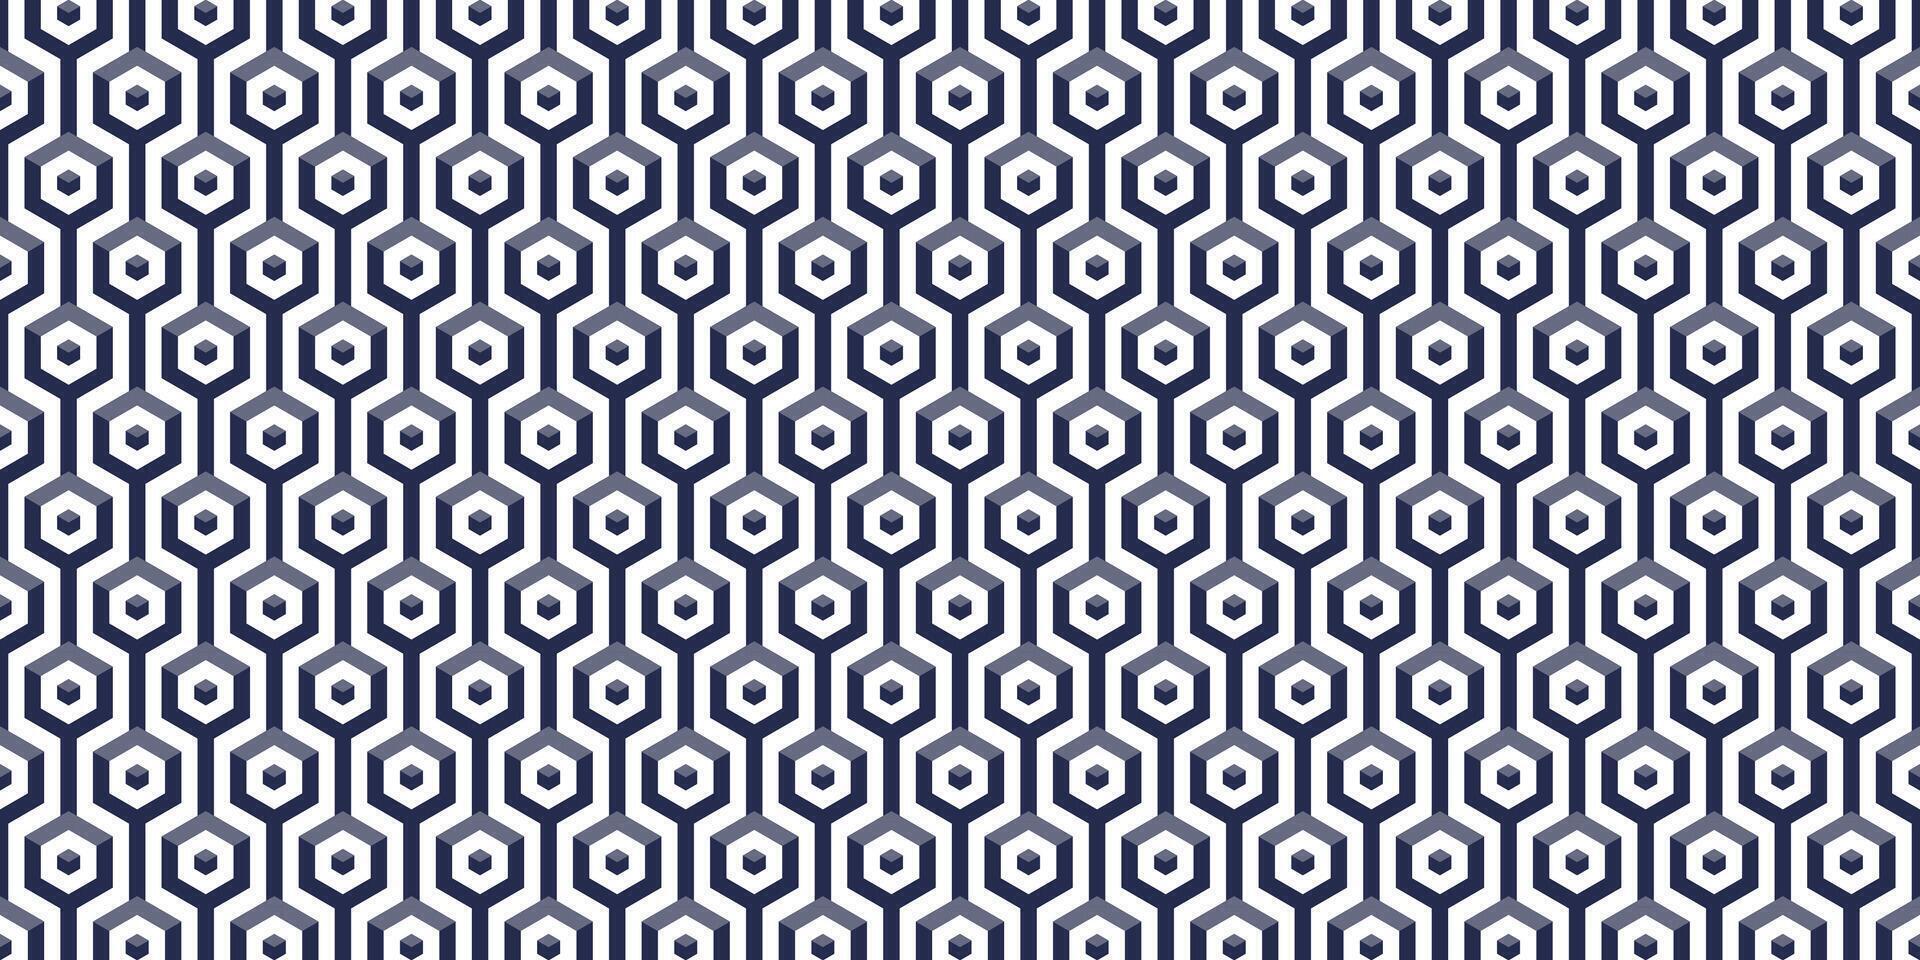 sömlös mönster av hexagonal blockera låda vektor illustration